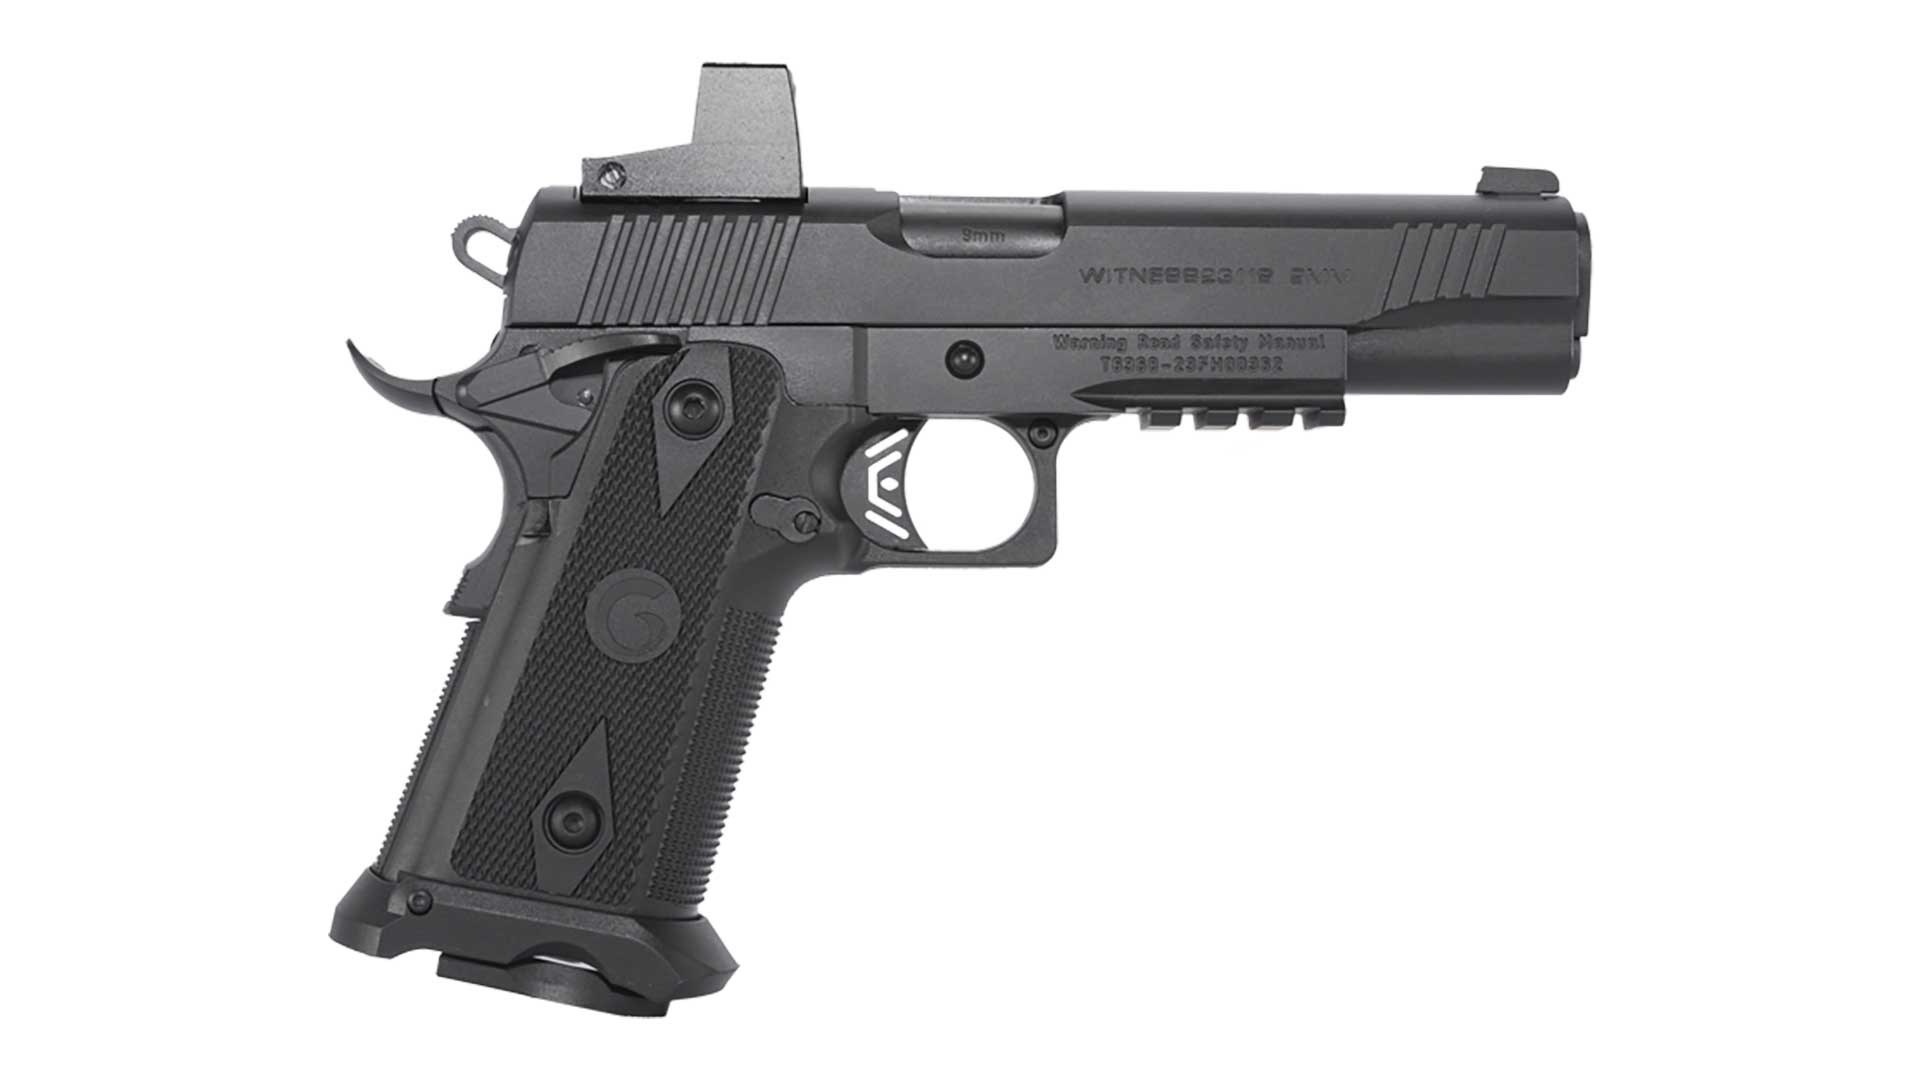 Right side of the EAA Girsan Witness2311 10mm pistol.